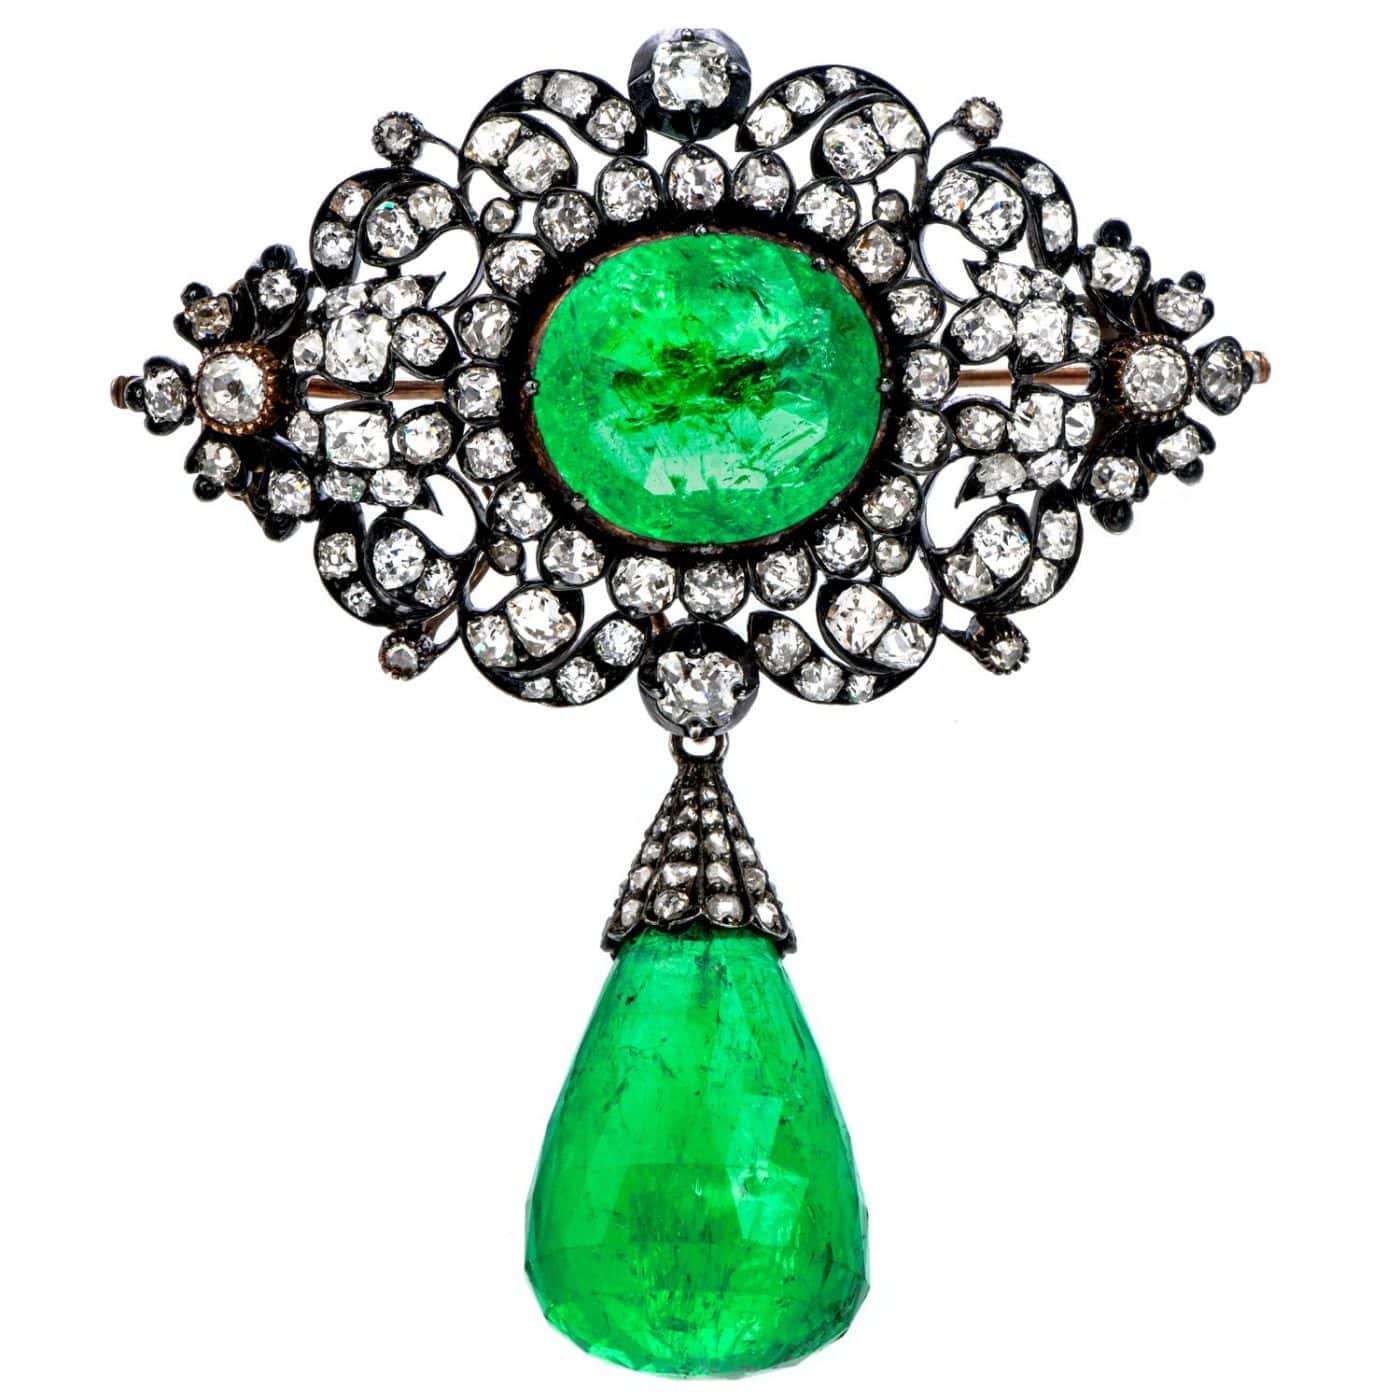 Emerald, Diamond, Silver and Gold Pendant, 1840